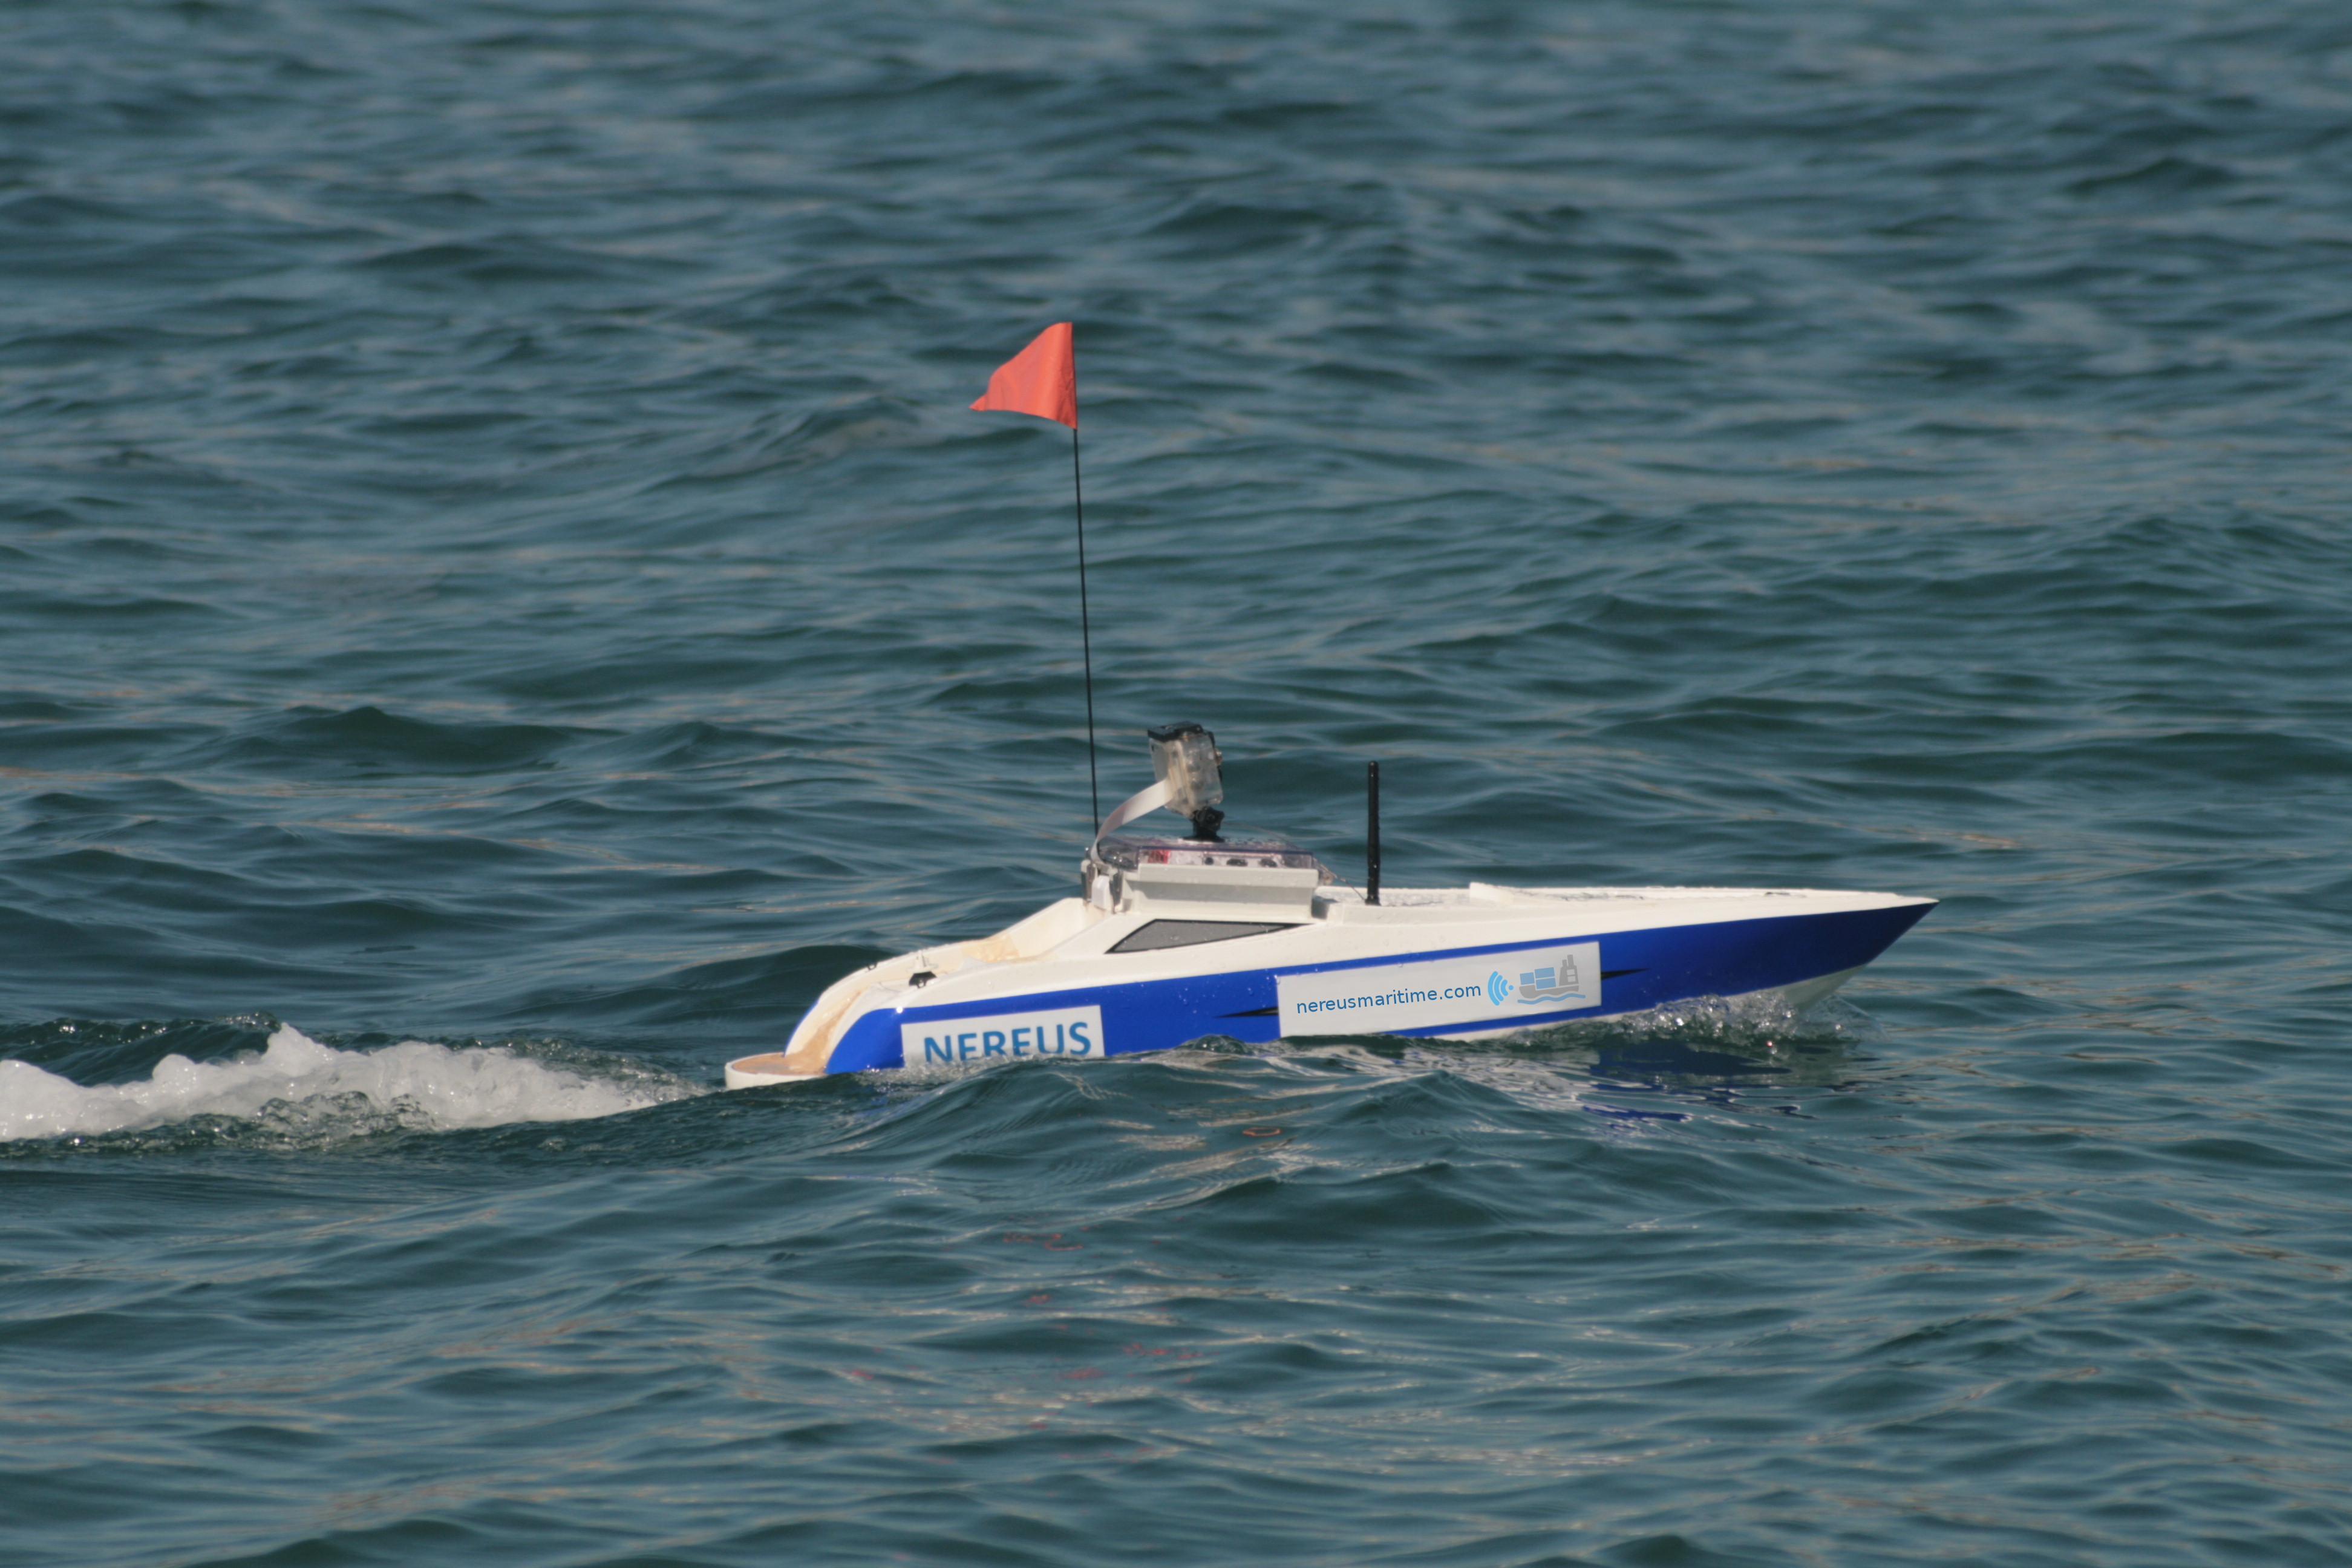 Nereus MVP autonomous boat